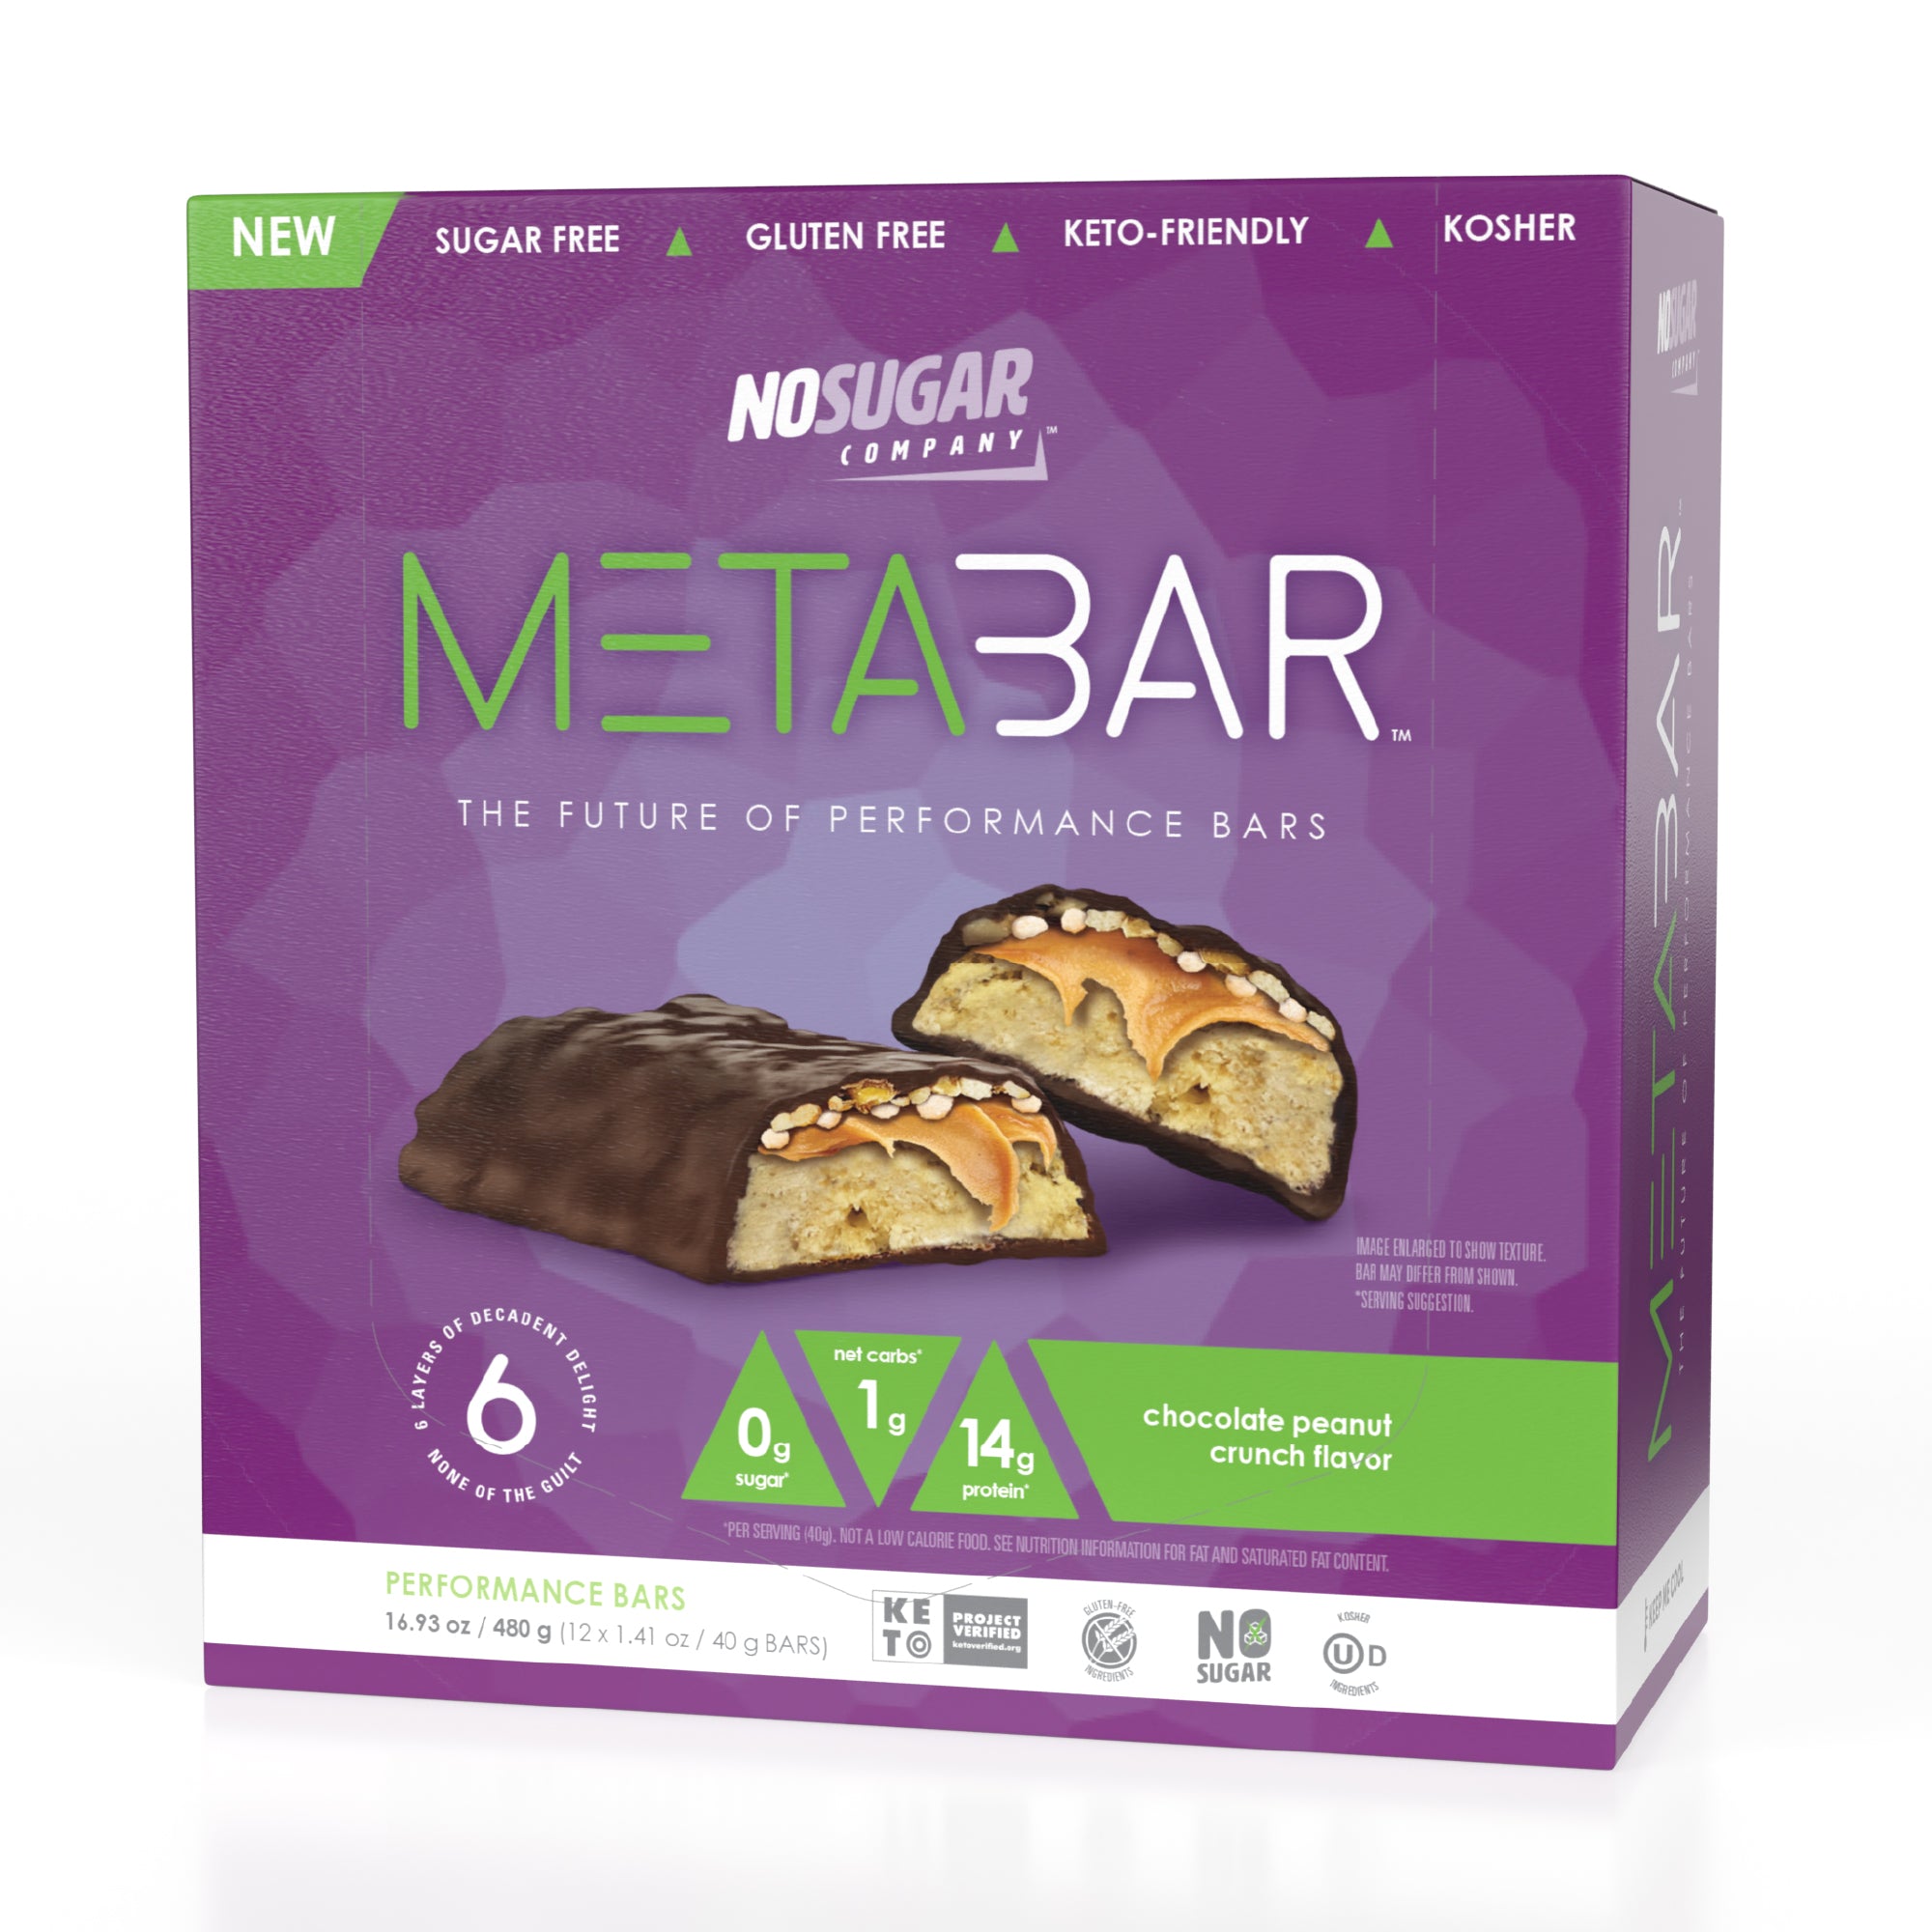 No Sugar METABAR Chocolate Peanut Crunch - 12 bars, 40g (1.41oz) per Bar